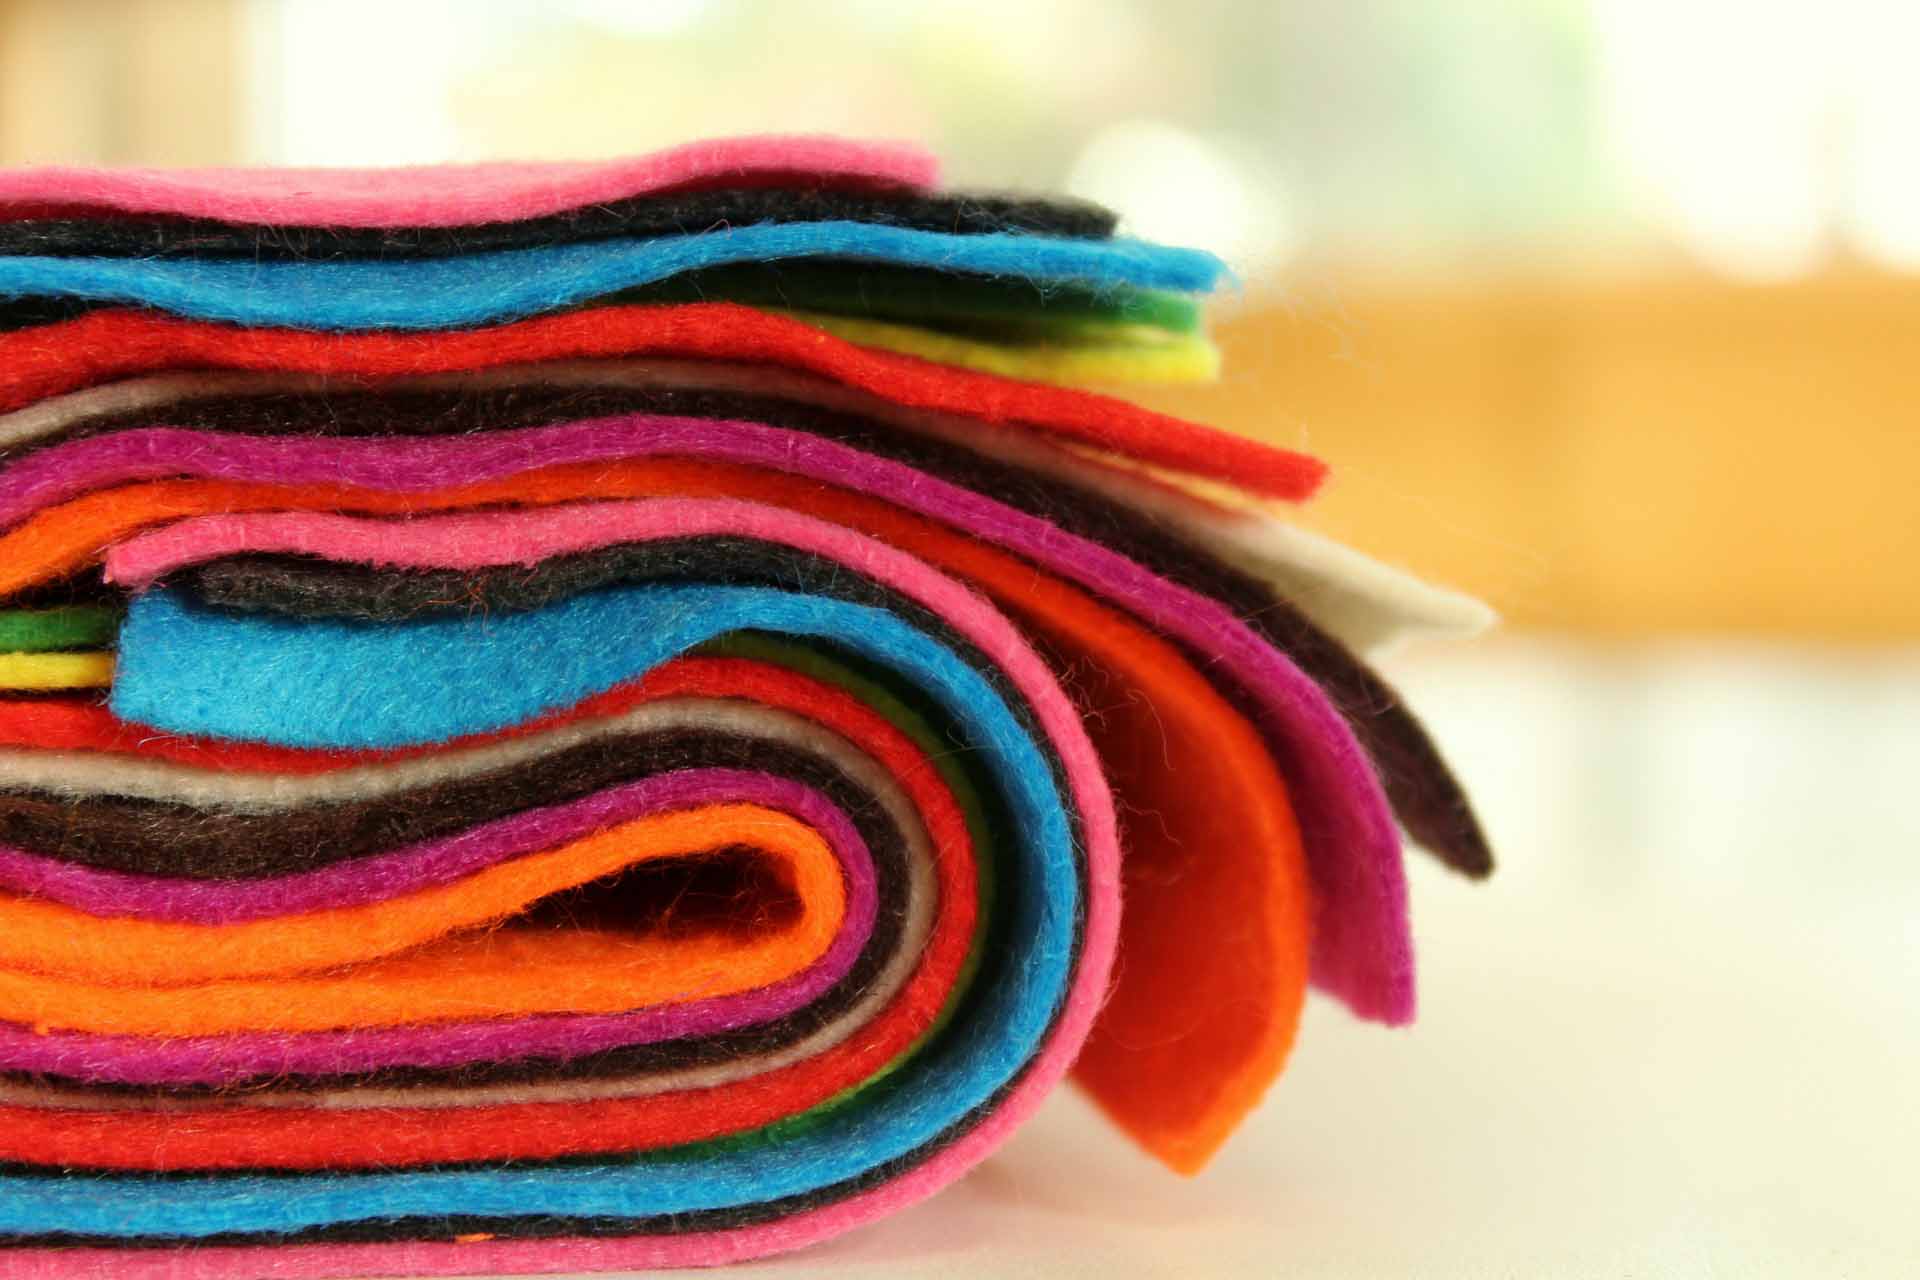 100 colors Felt Fabric [ DIY Material ] - Felt & Yarn